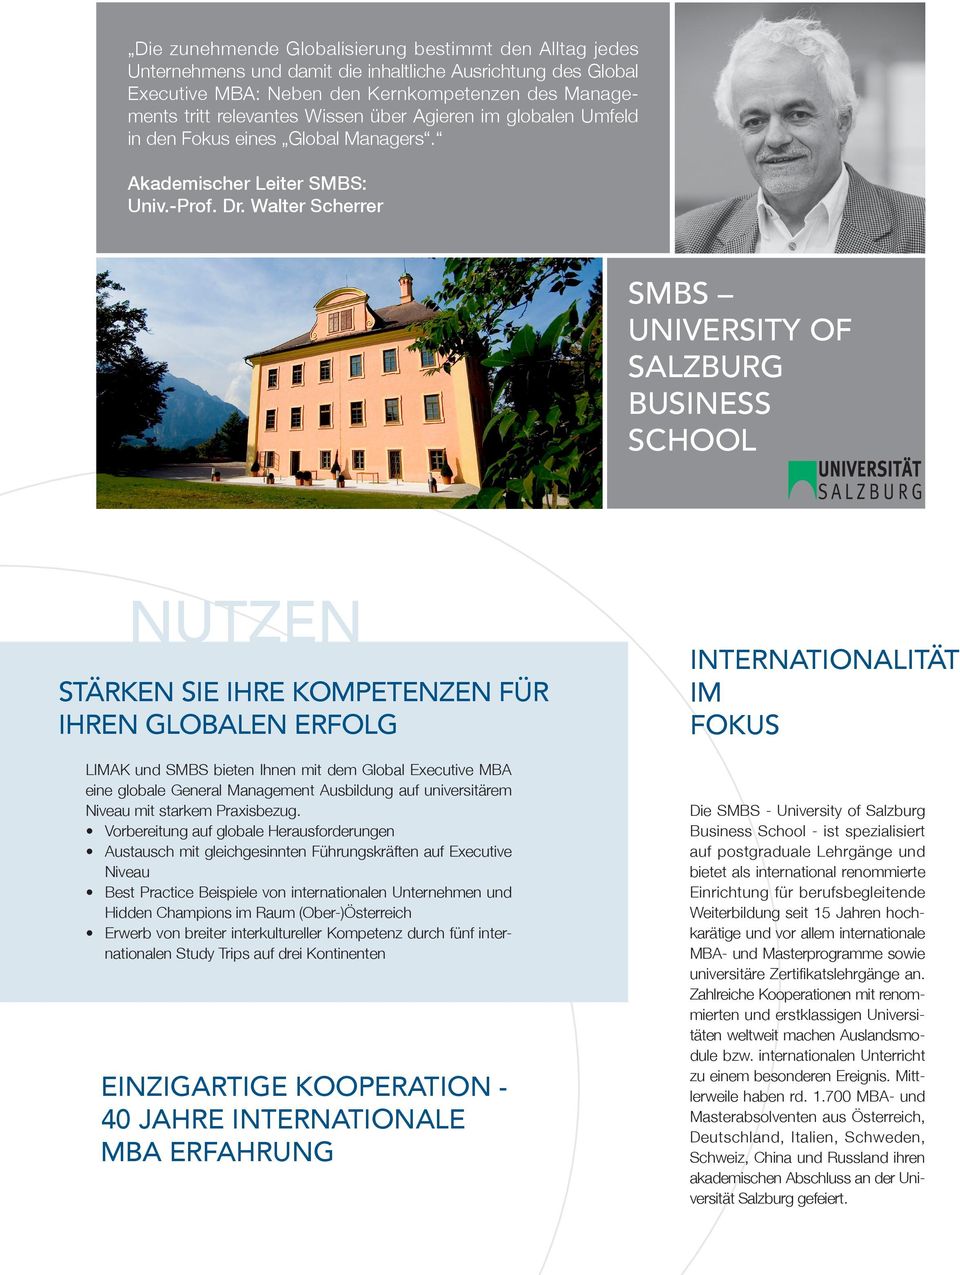 Walter Scherrer SMBS University of Salzburg Business School Nutzen stärken sie ihre kompetenzen für ihren globalen erfolg LIMAK und SMBS bieten Ihnen mit dem Global Executive MBA eine globale General